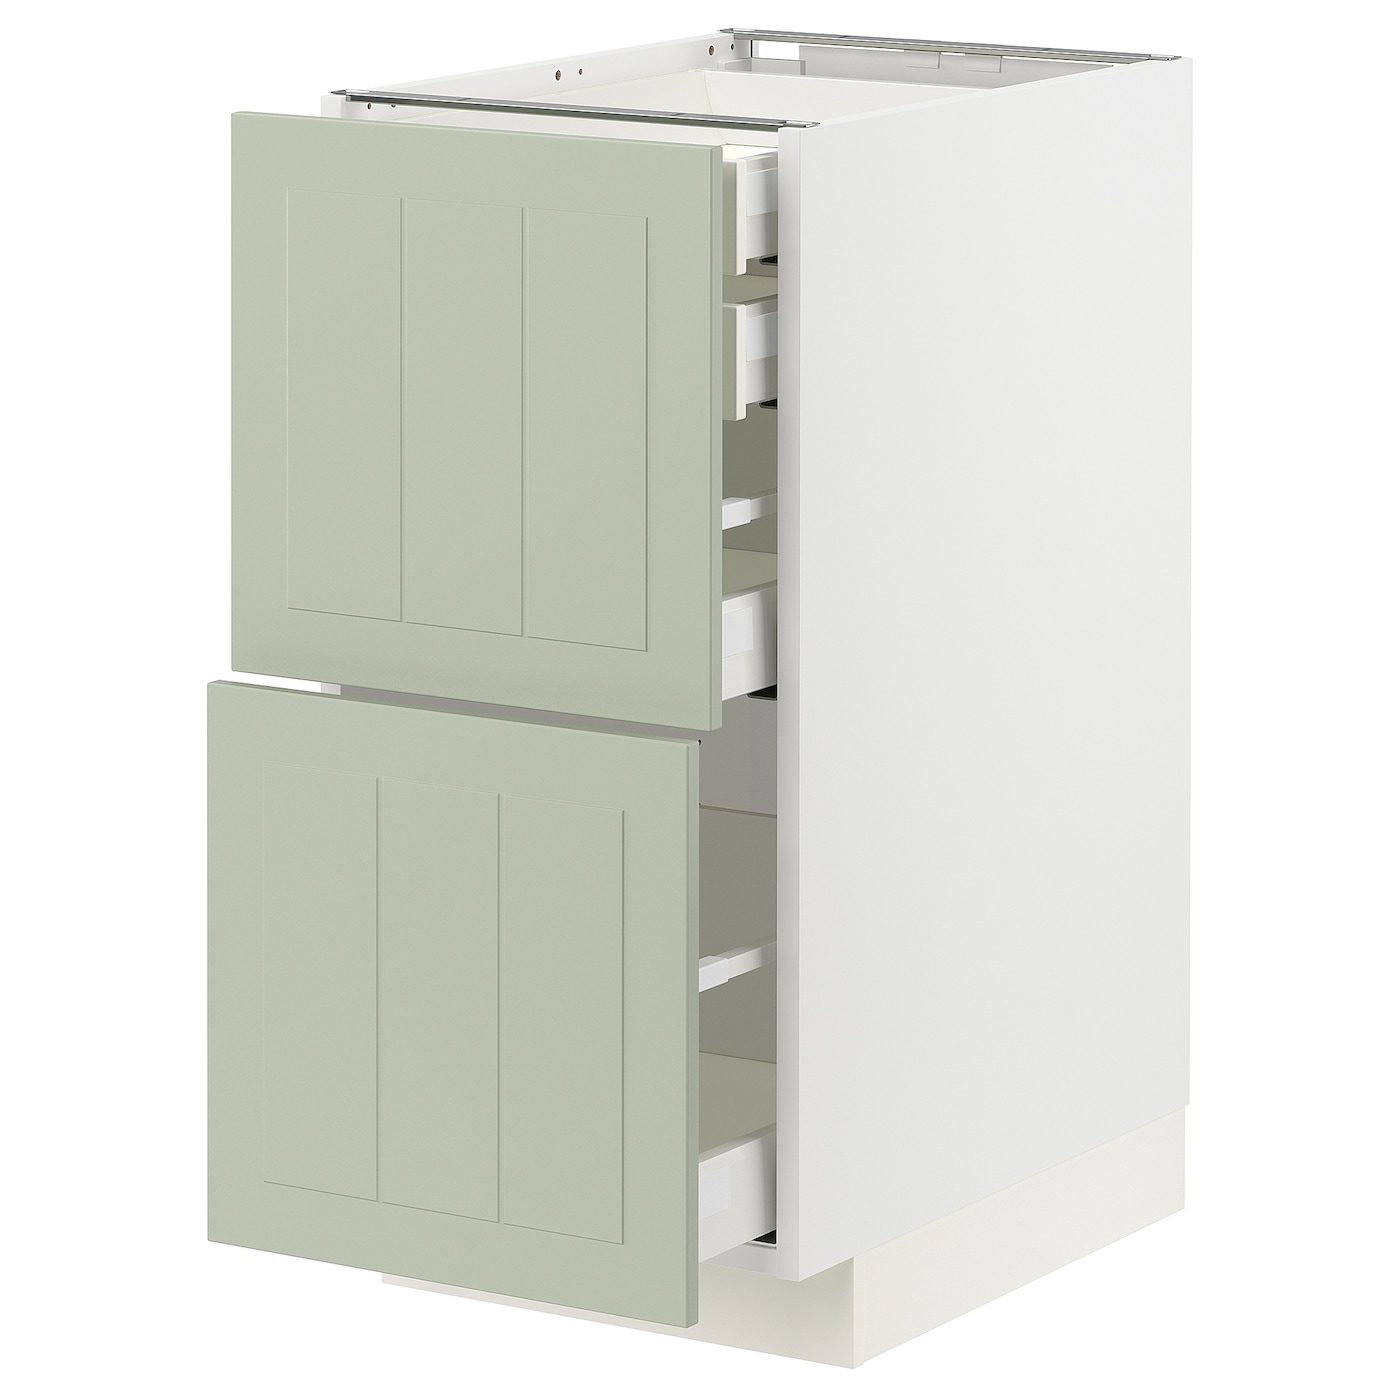 Напольный кухонный шкаф  - IKEA METOD MAXIMERA, 88x62x40см, белый/светло-зеленый, МЕТОД МАКСИМЕРА ИКЕА